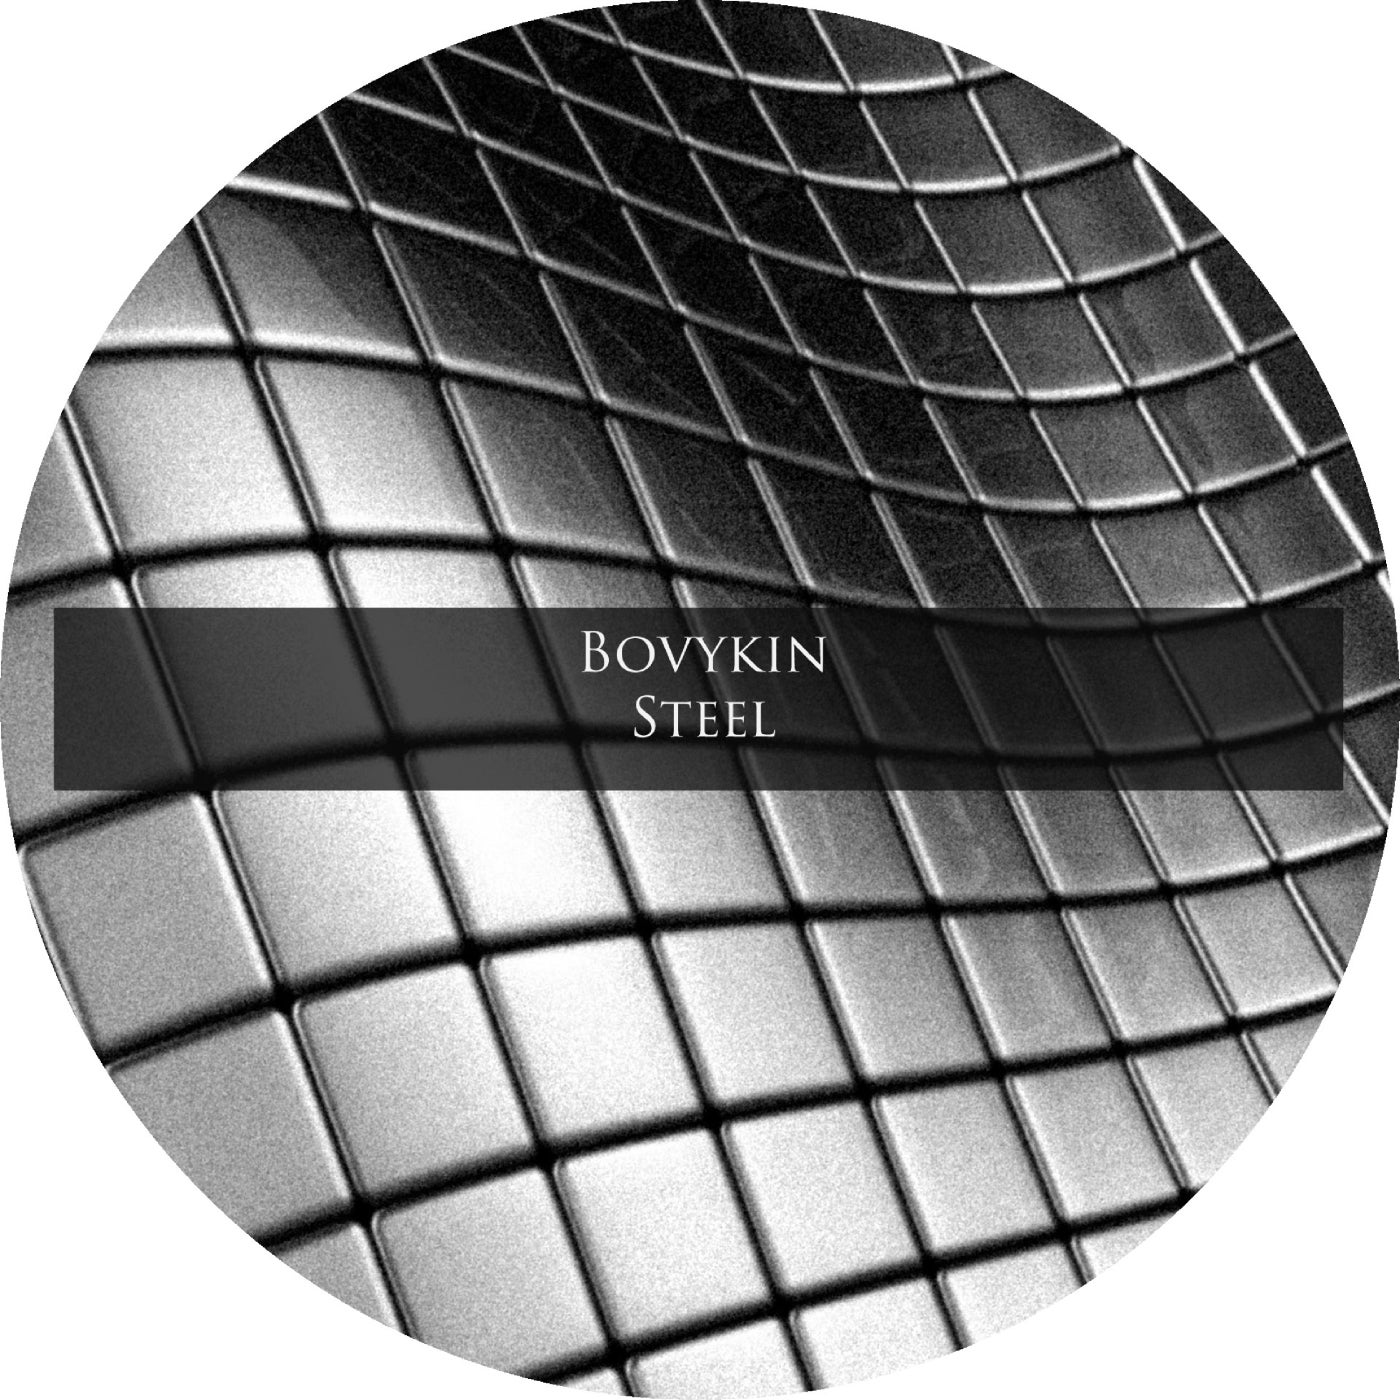 Bovykin - Steel [7CLOUD1197]